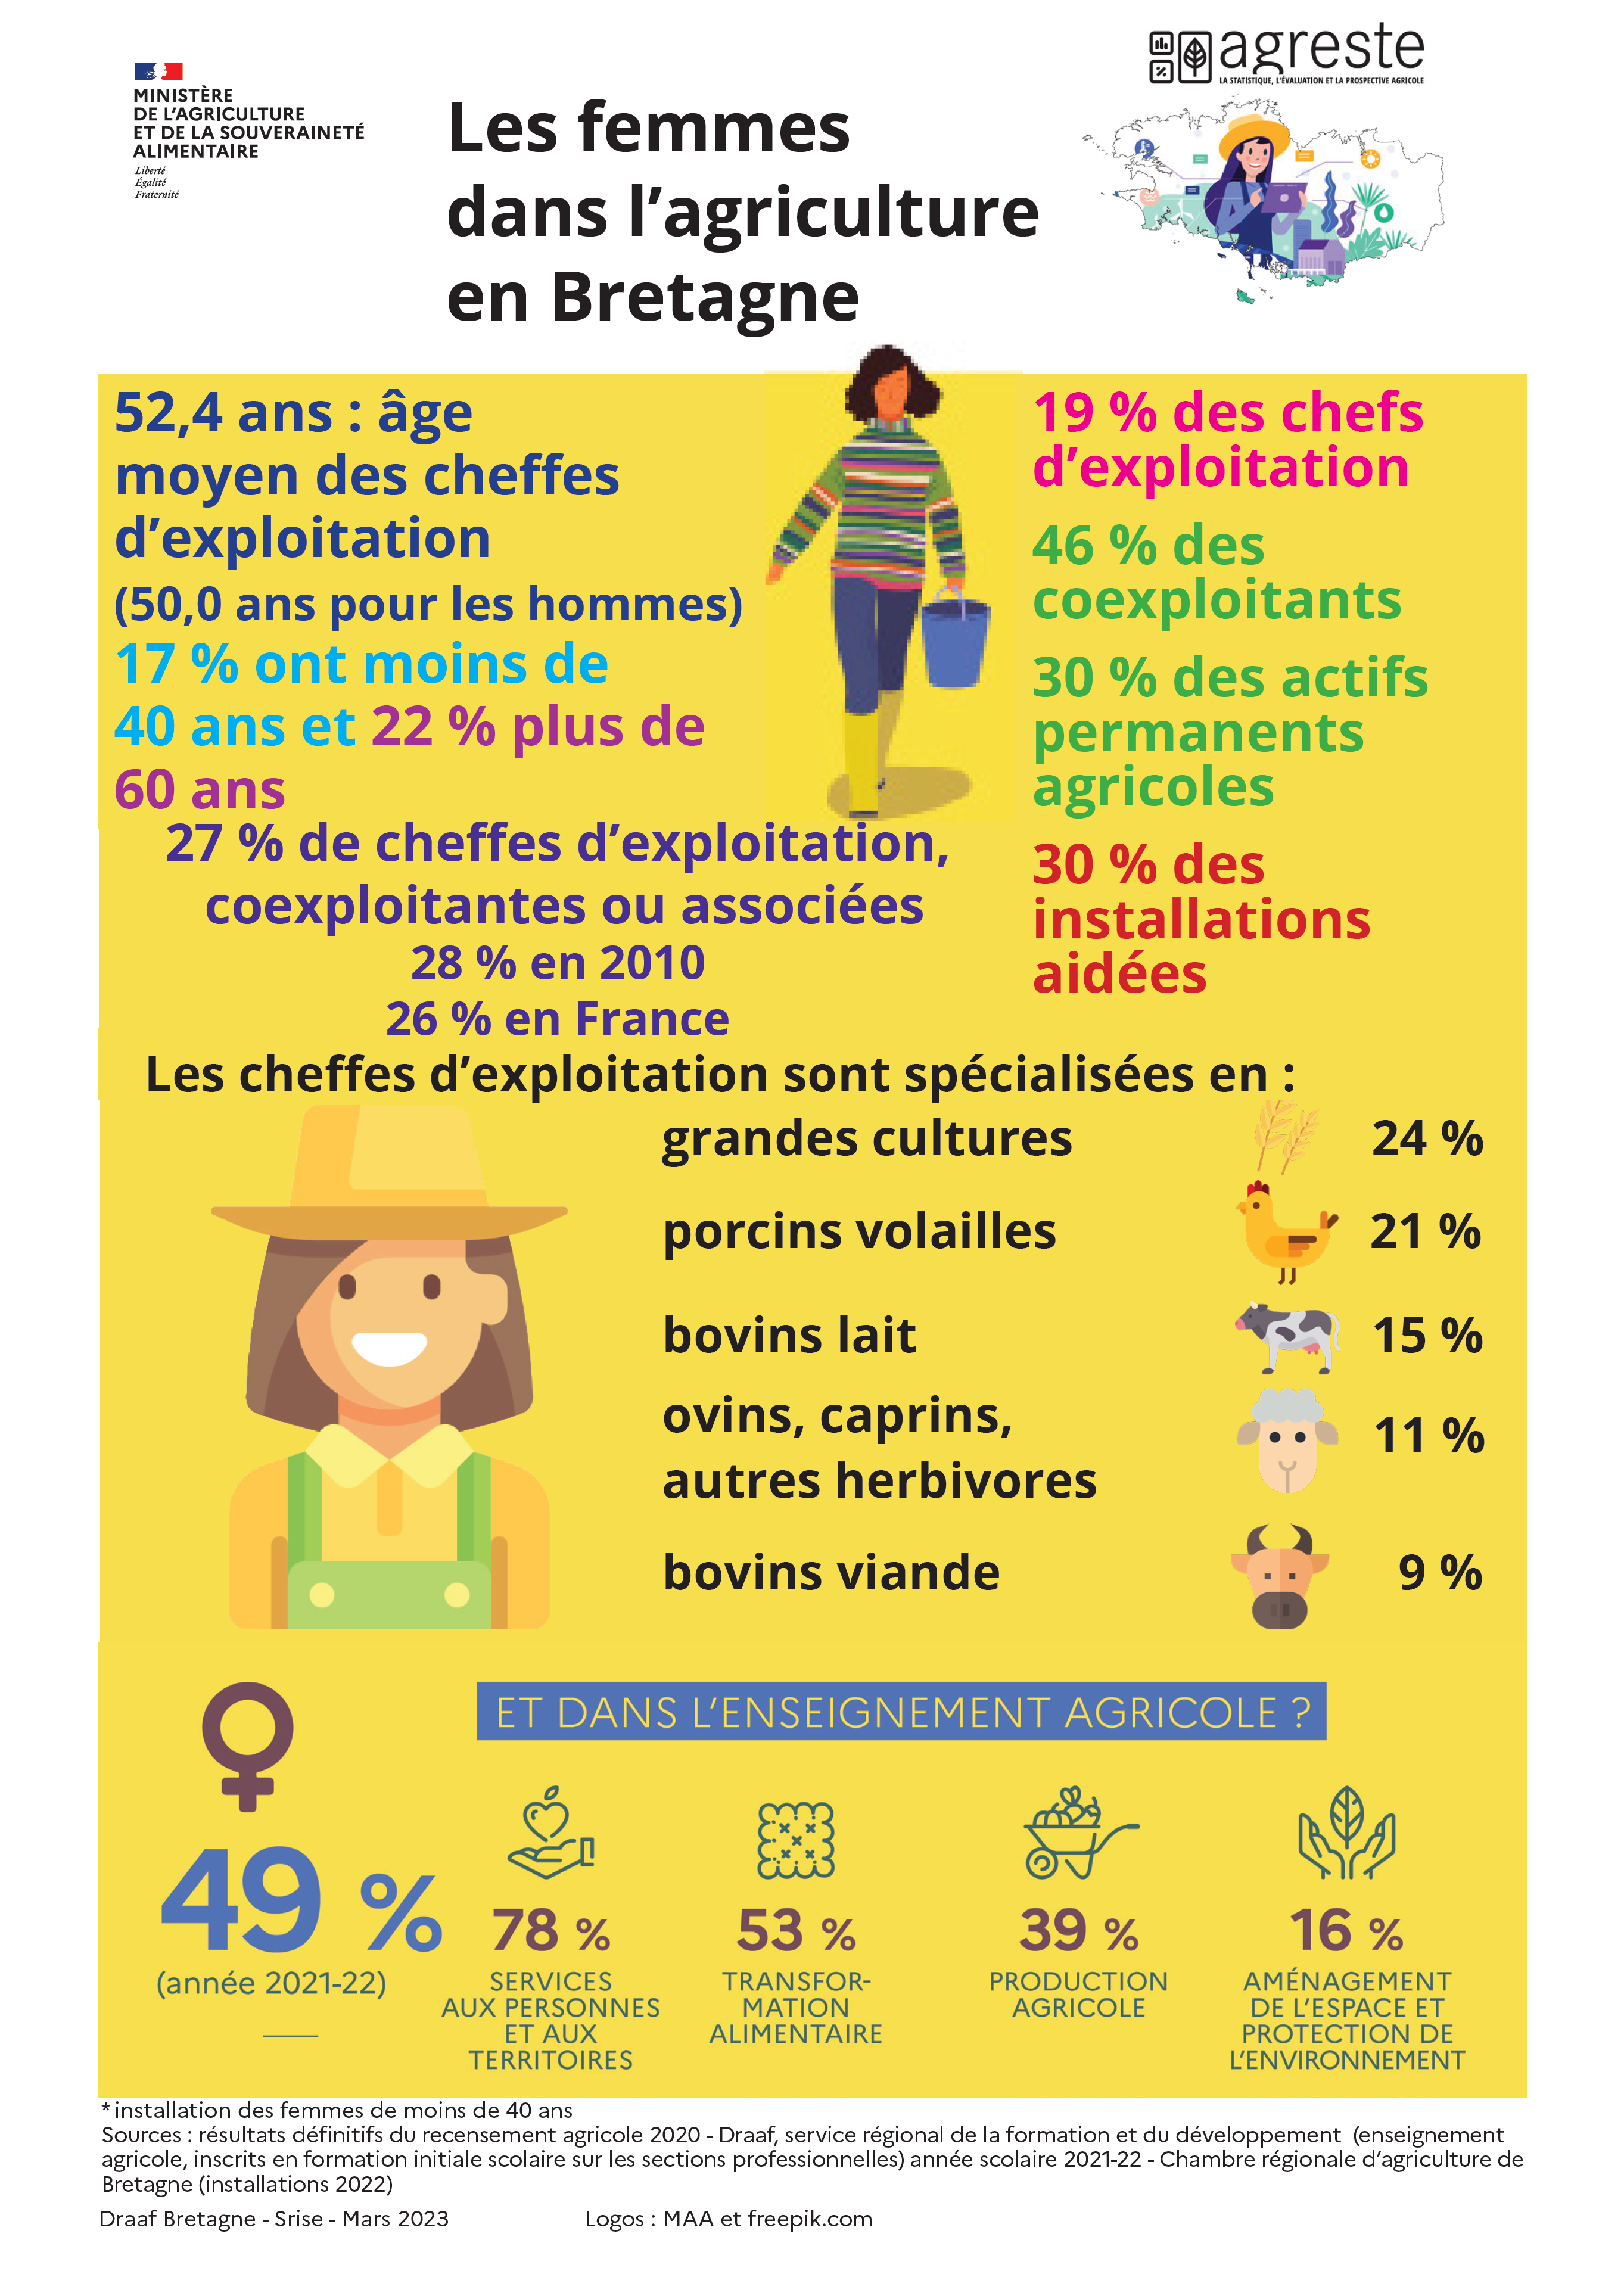 Les femmes dans l'agriculture bretonne en 2020